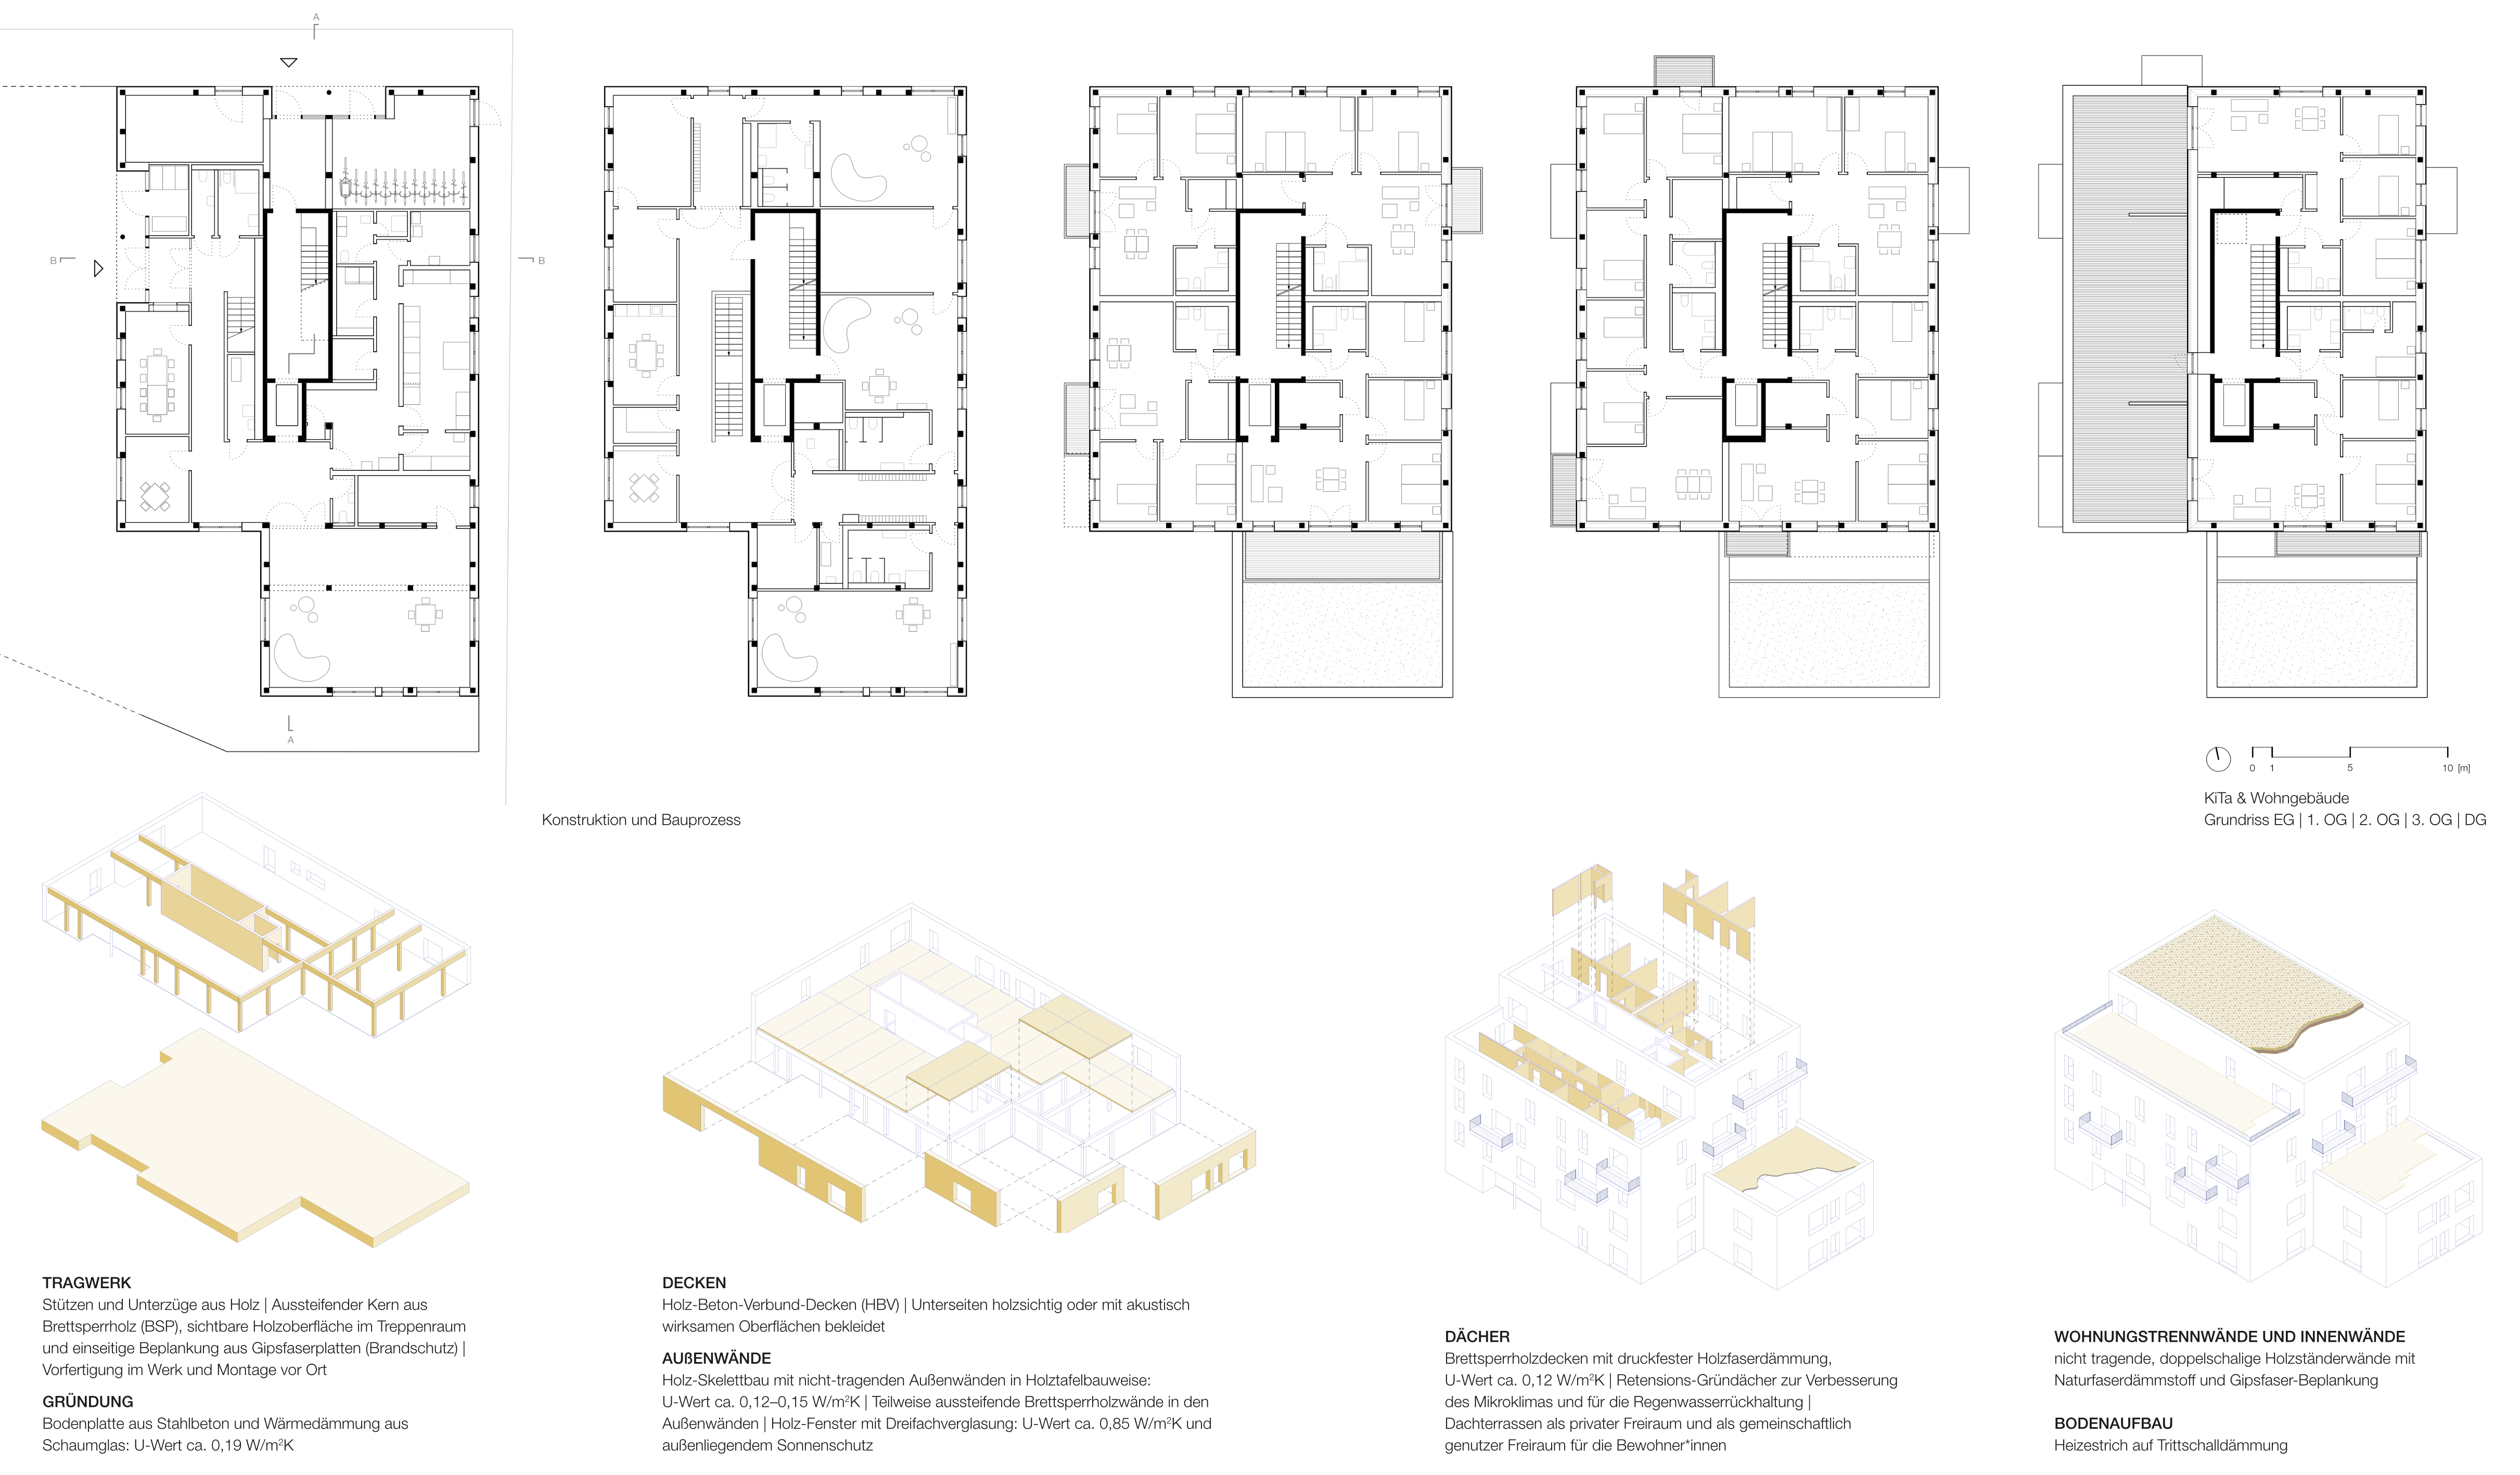 KiTa & Wohngebäude Grundriss | Konstruktion und Bauprozess (Quelle: © ZRS Architekten Ingenieure)